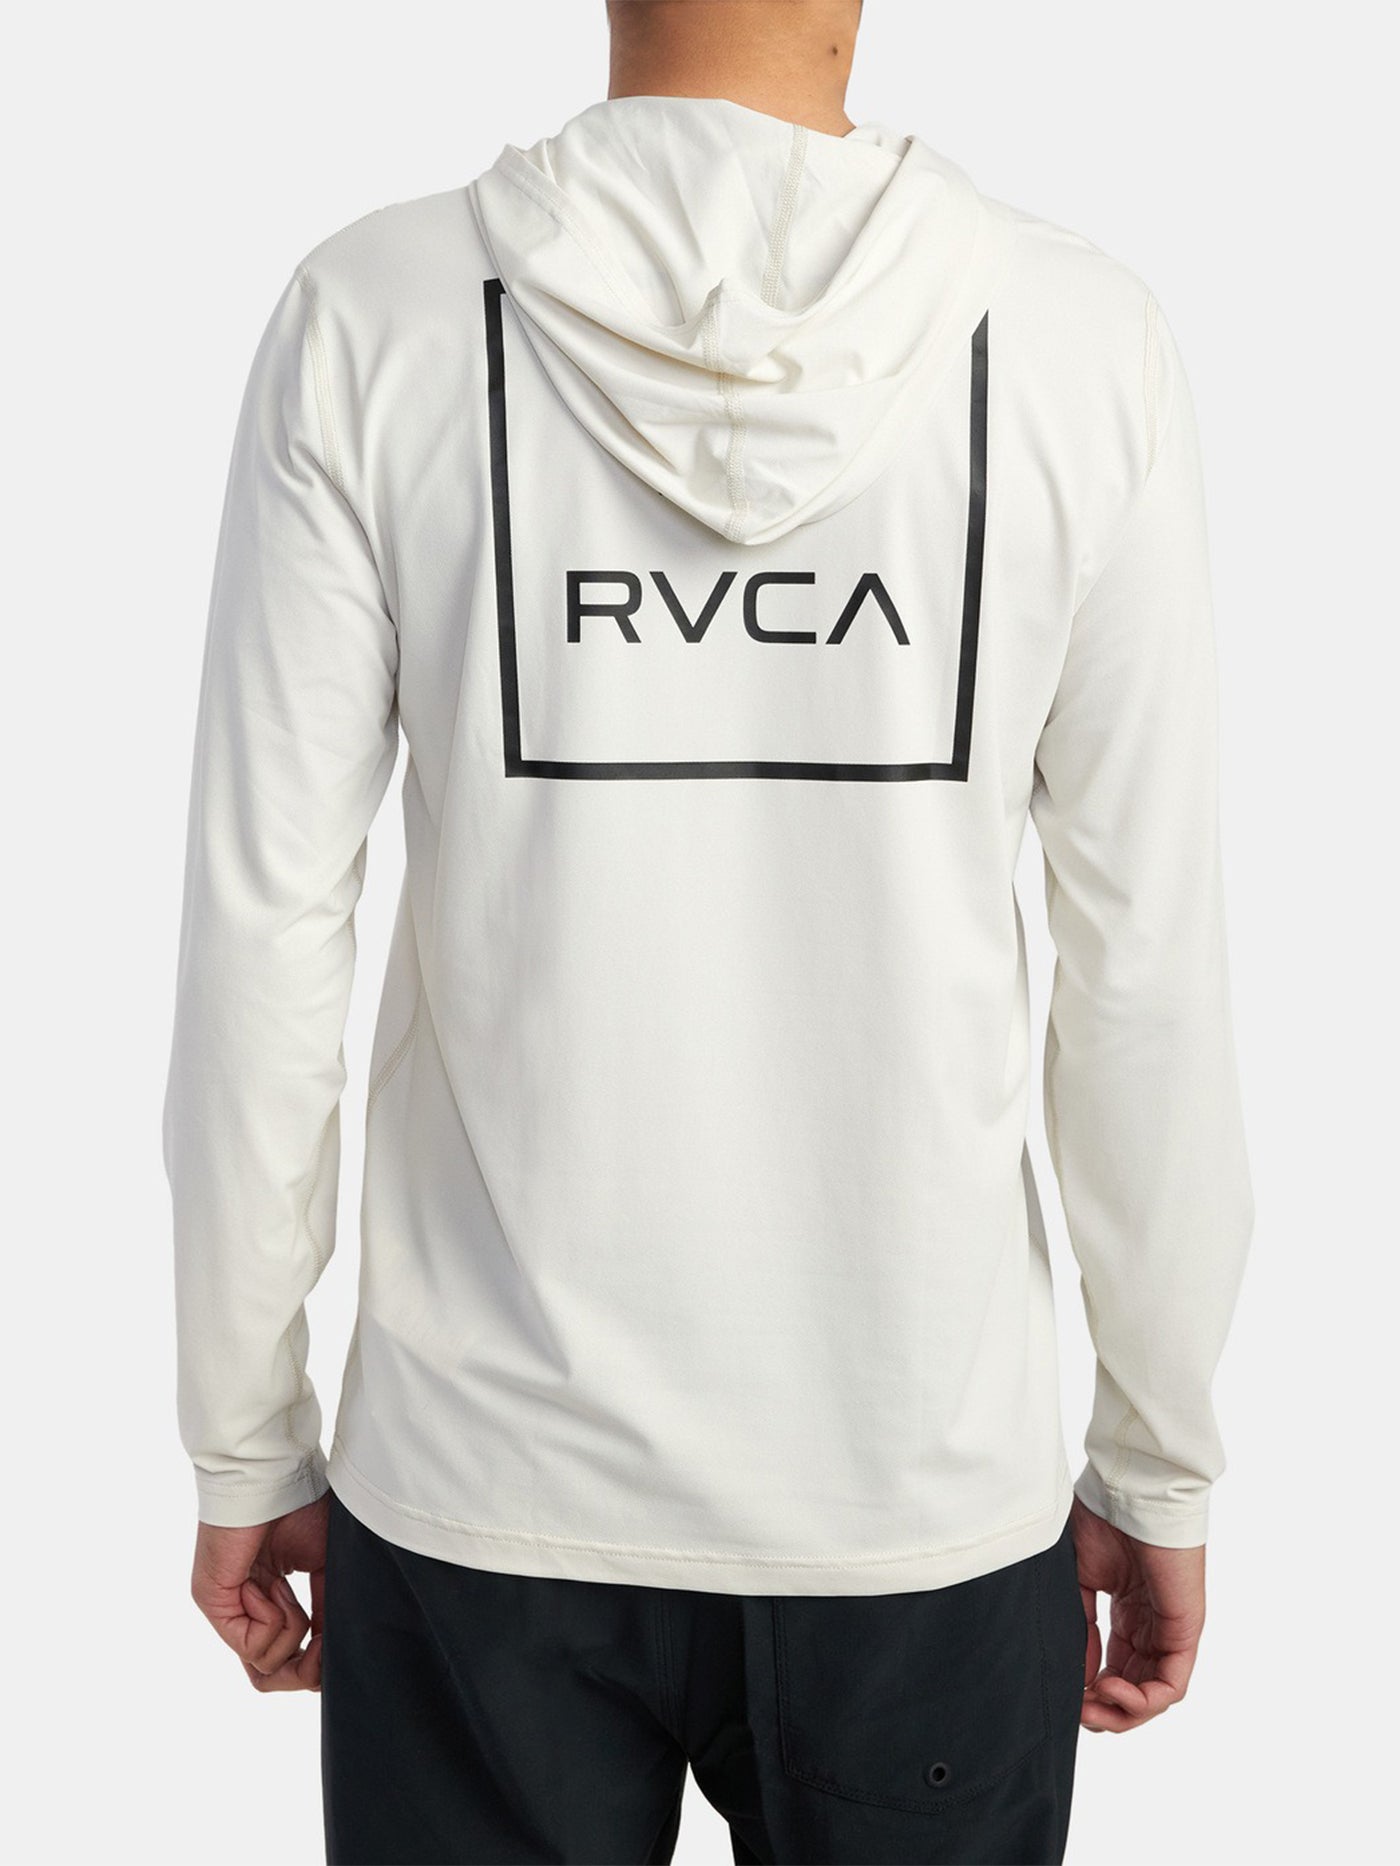 RVCA Surf Hooded Long Sleeve Rashguard